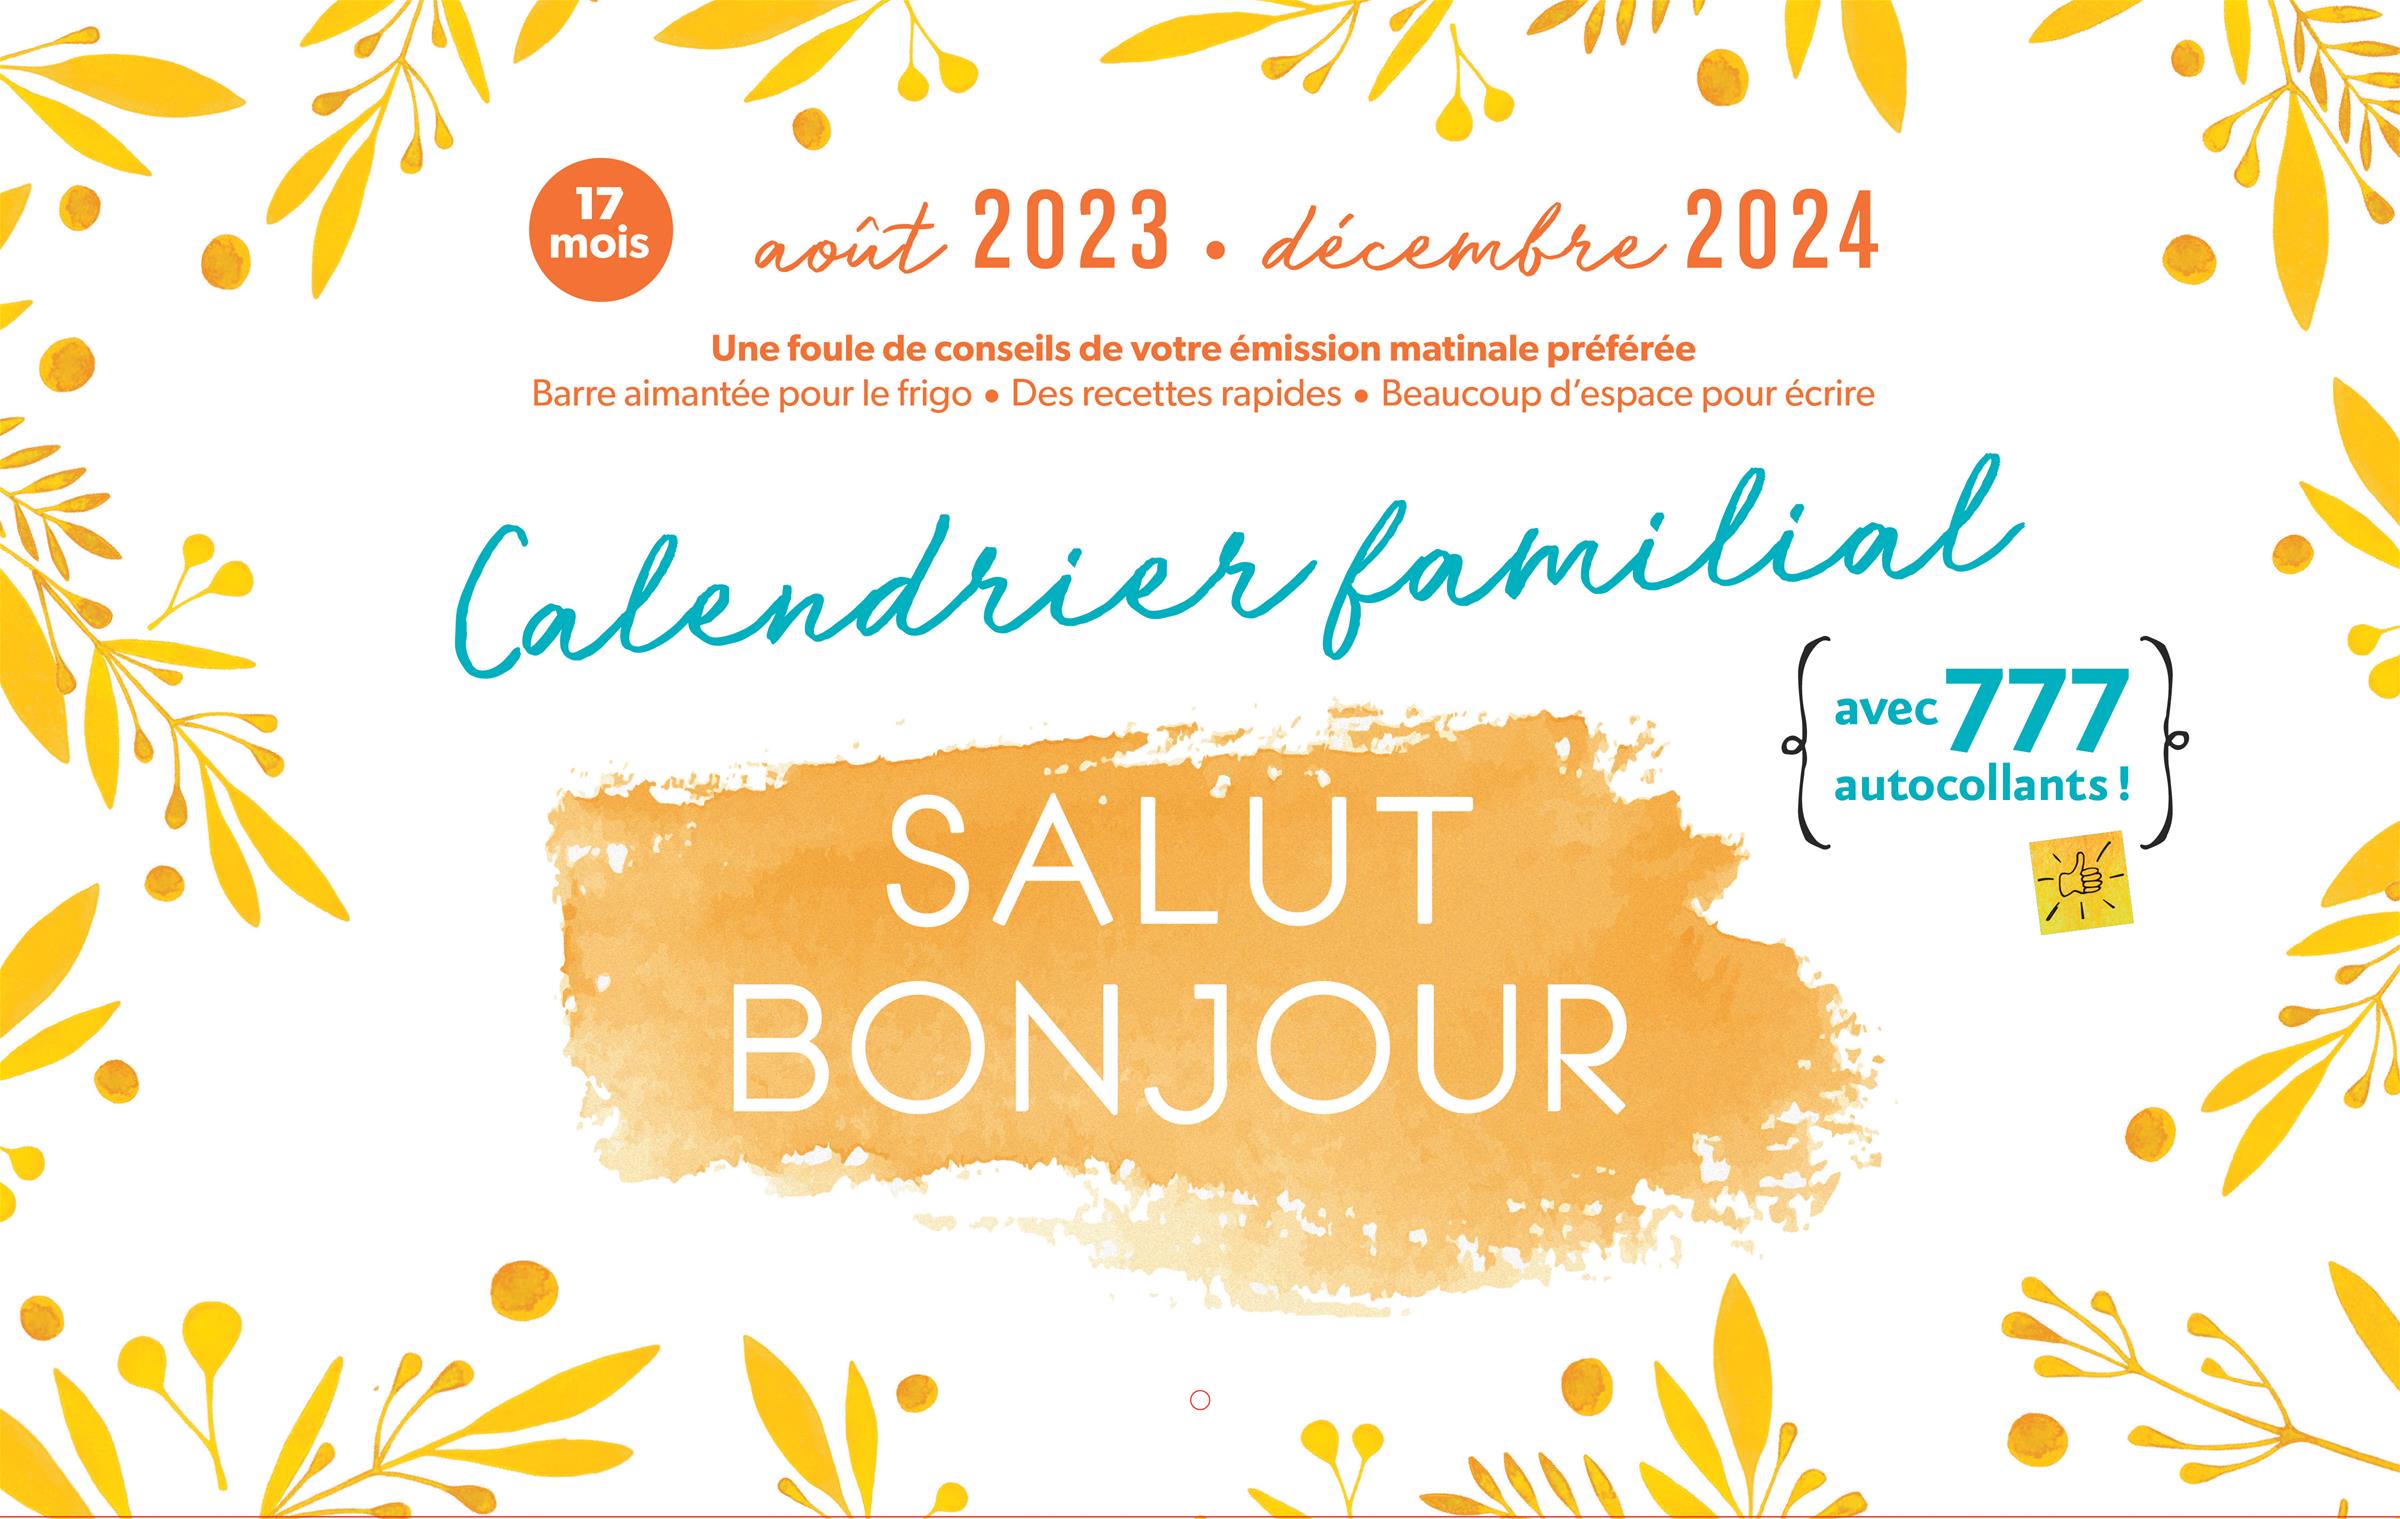 Calendrier familial Salut Bonjour 2023-2024 – QUB livre